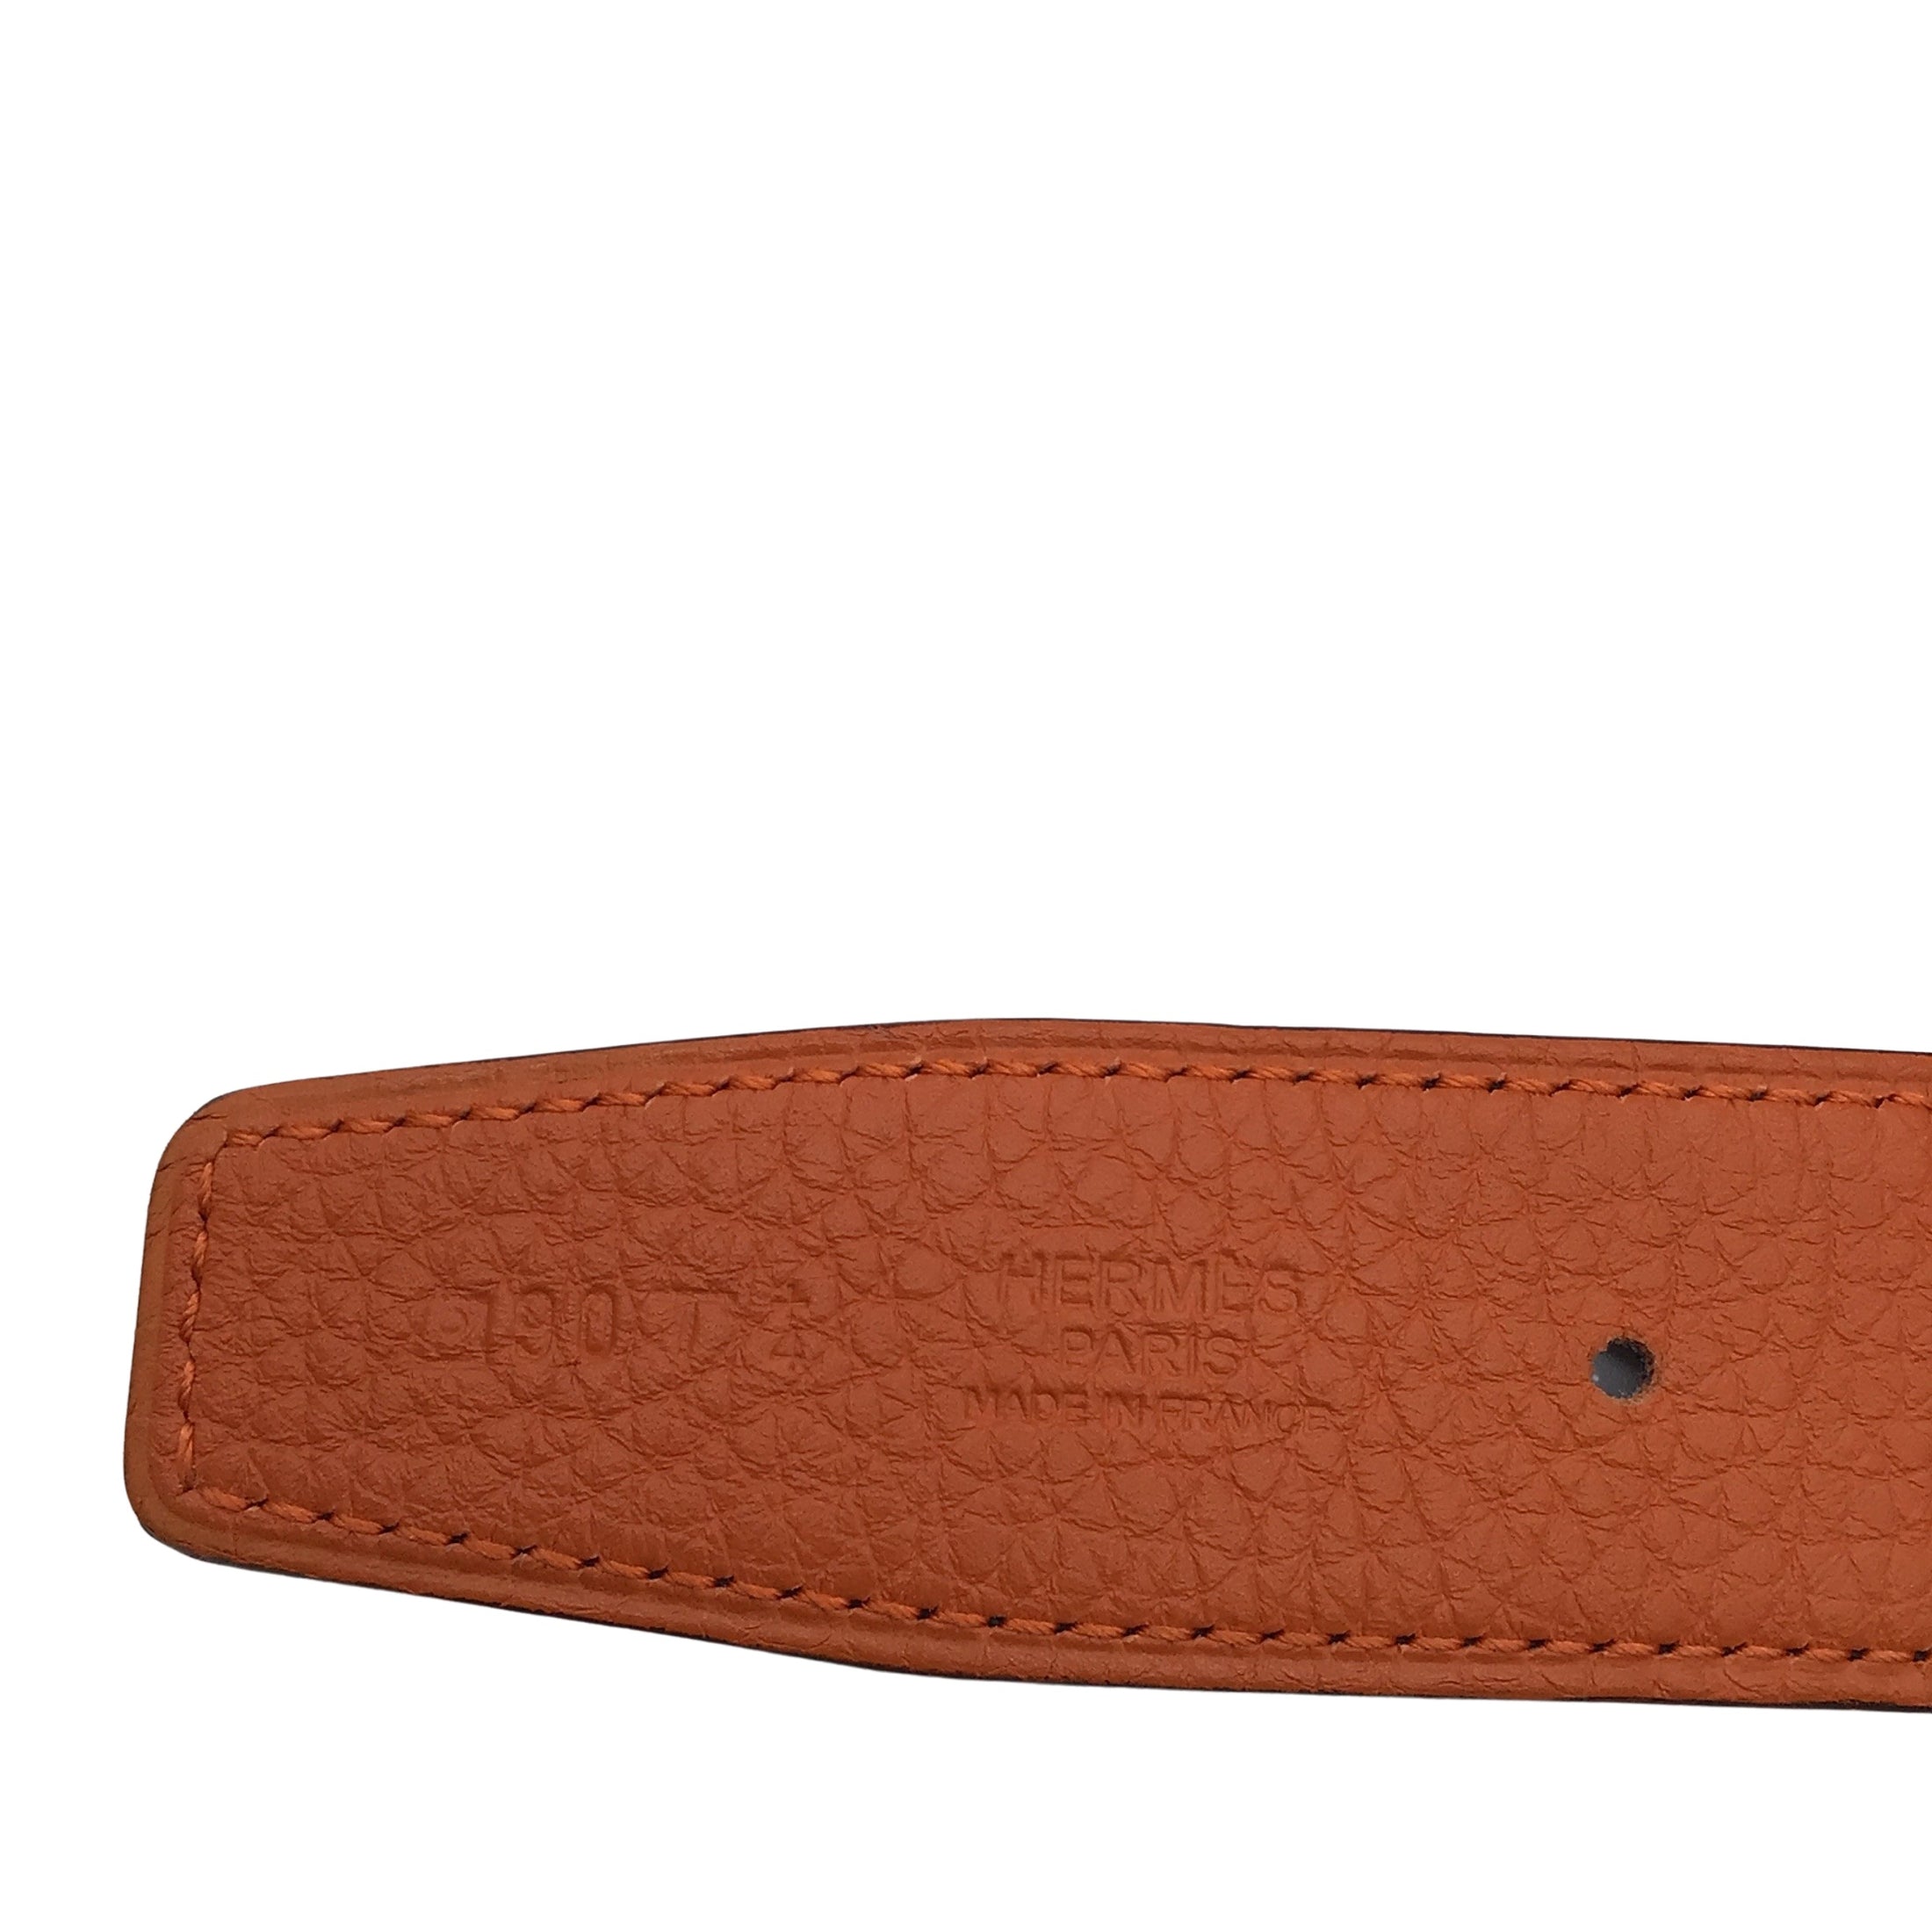 Hermes Orange / Black 2012 Reversible 32mm Leather Belt Strap